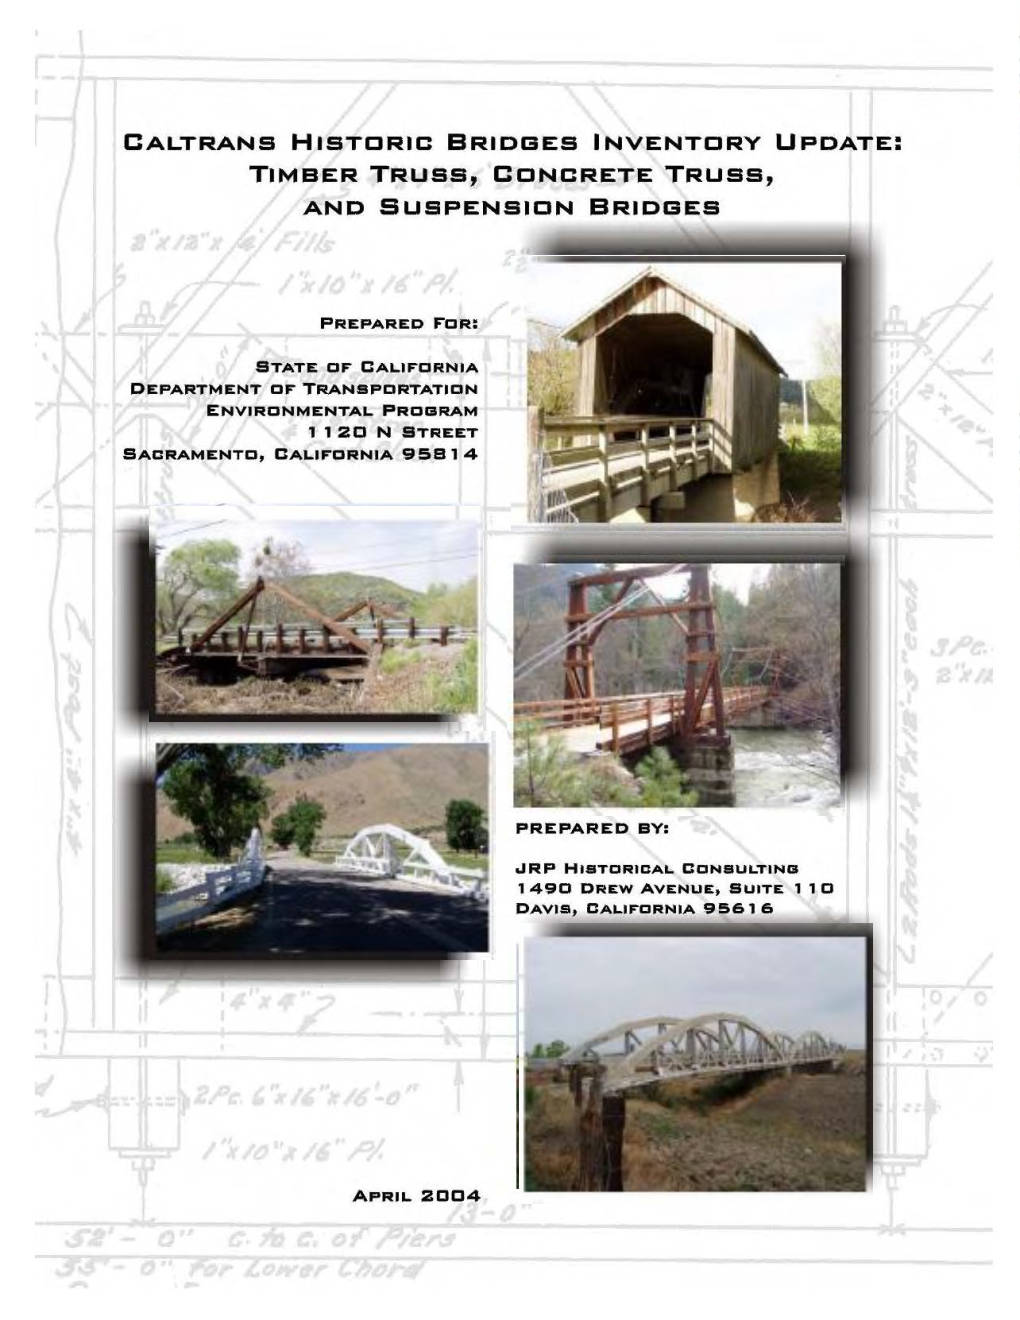 Caltrans Historic Bridge Inventory Update: Timber Truss, Concrete Truss, and Suspension Bridges